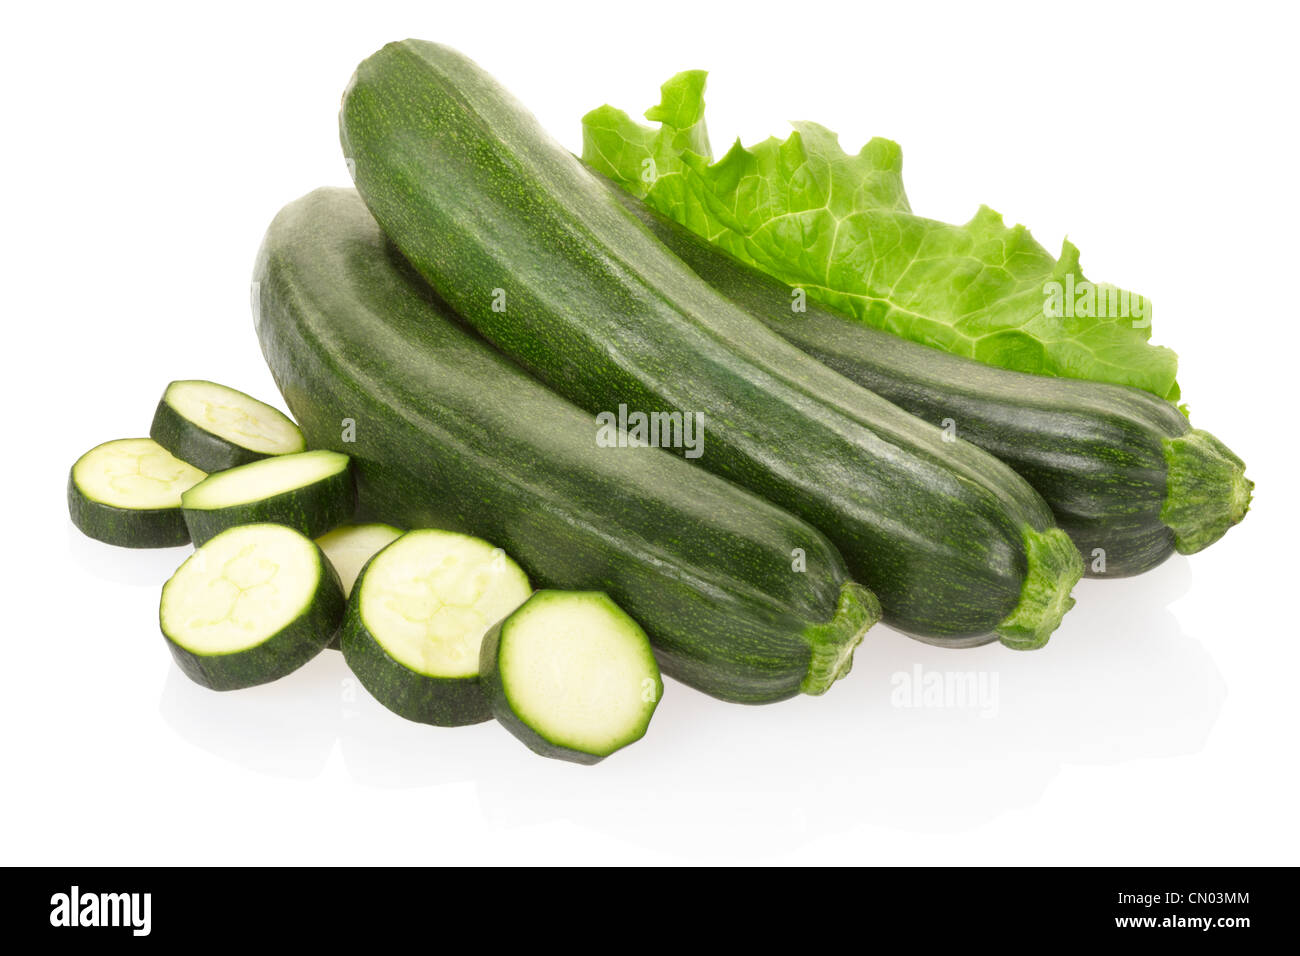 Zucchini or courgette Stock Photo